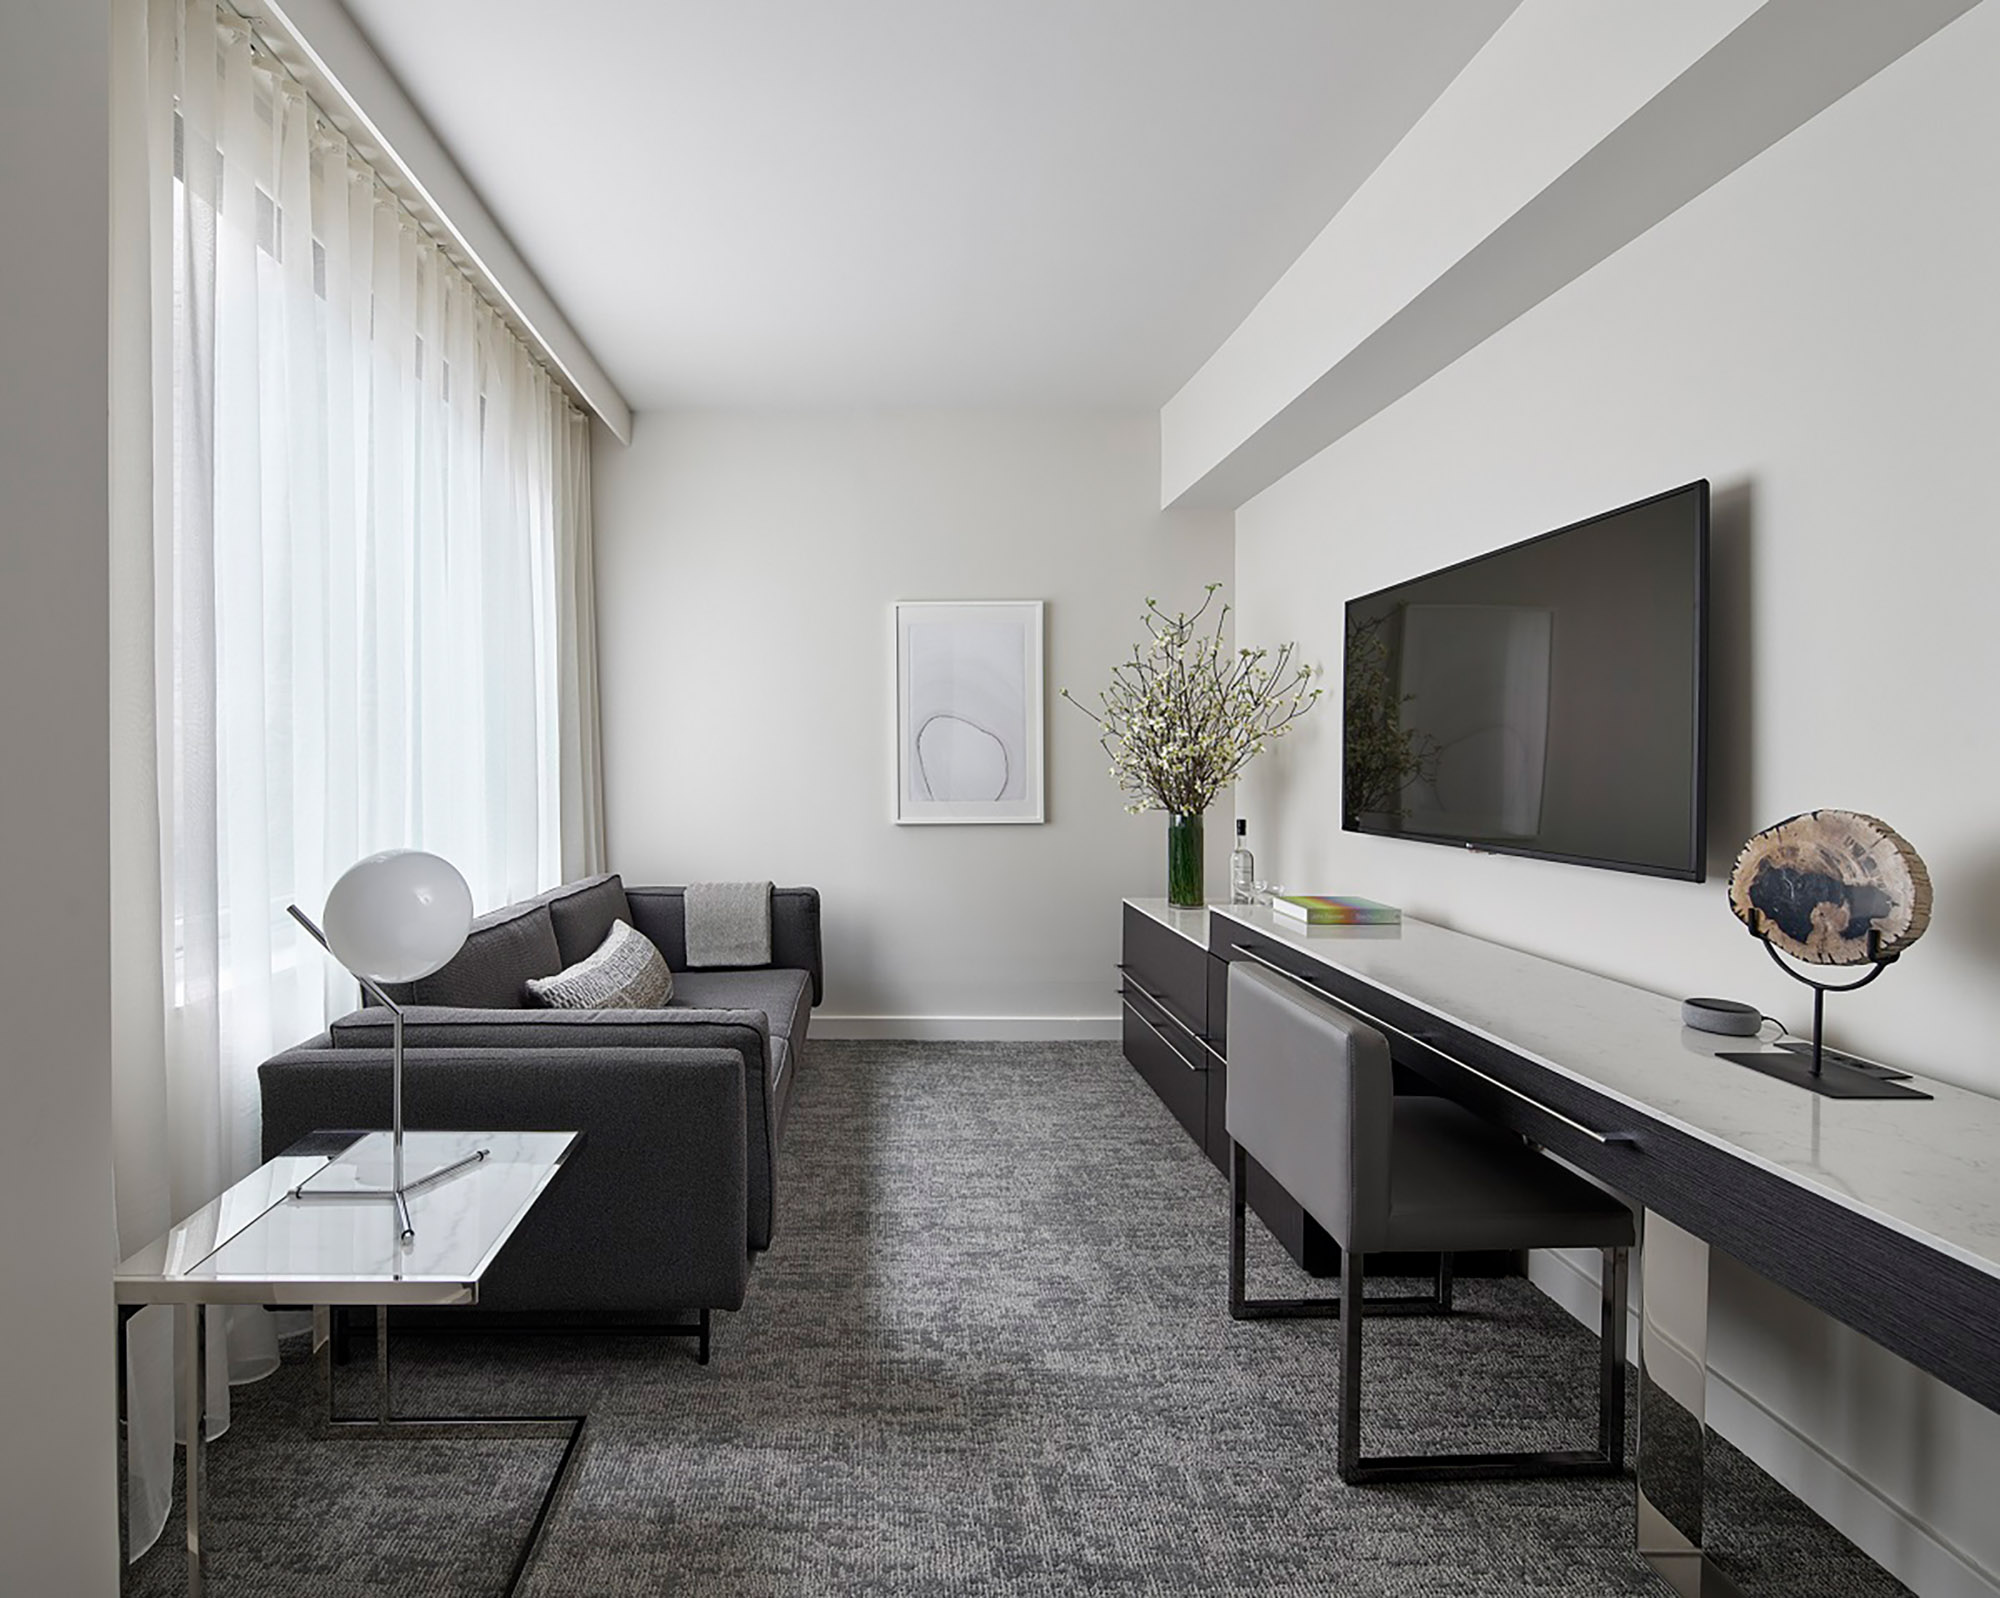 separate living area in hotel suite